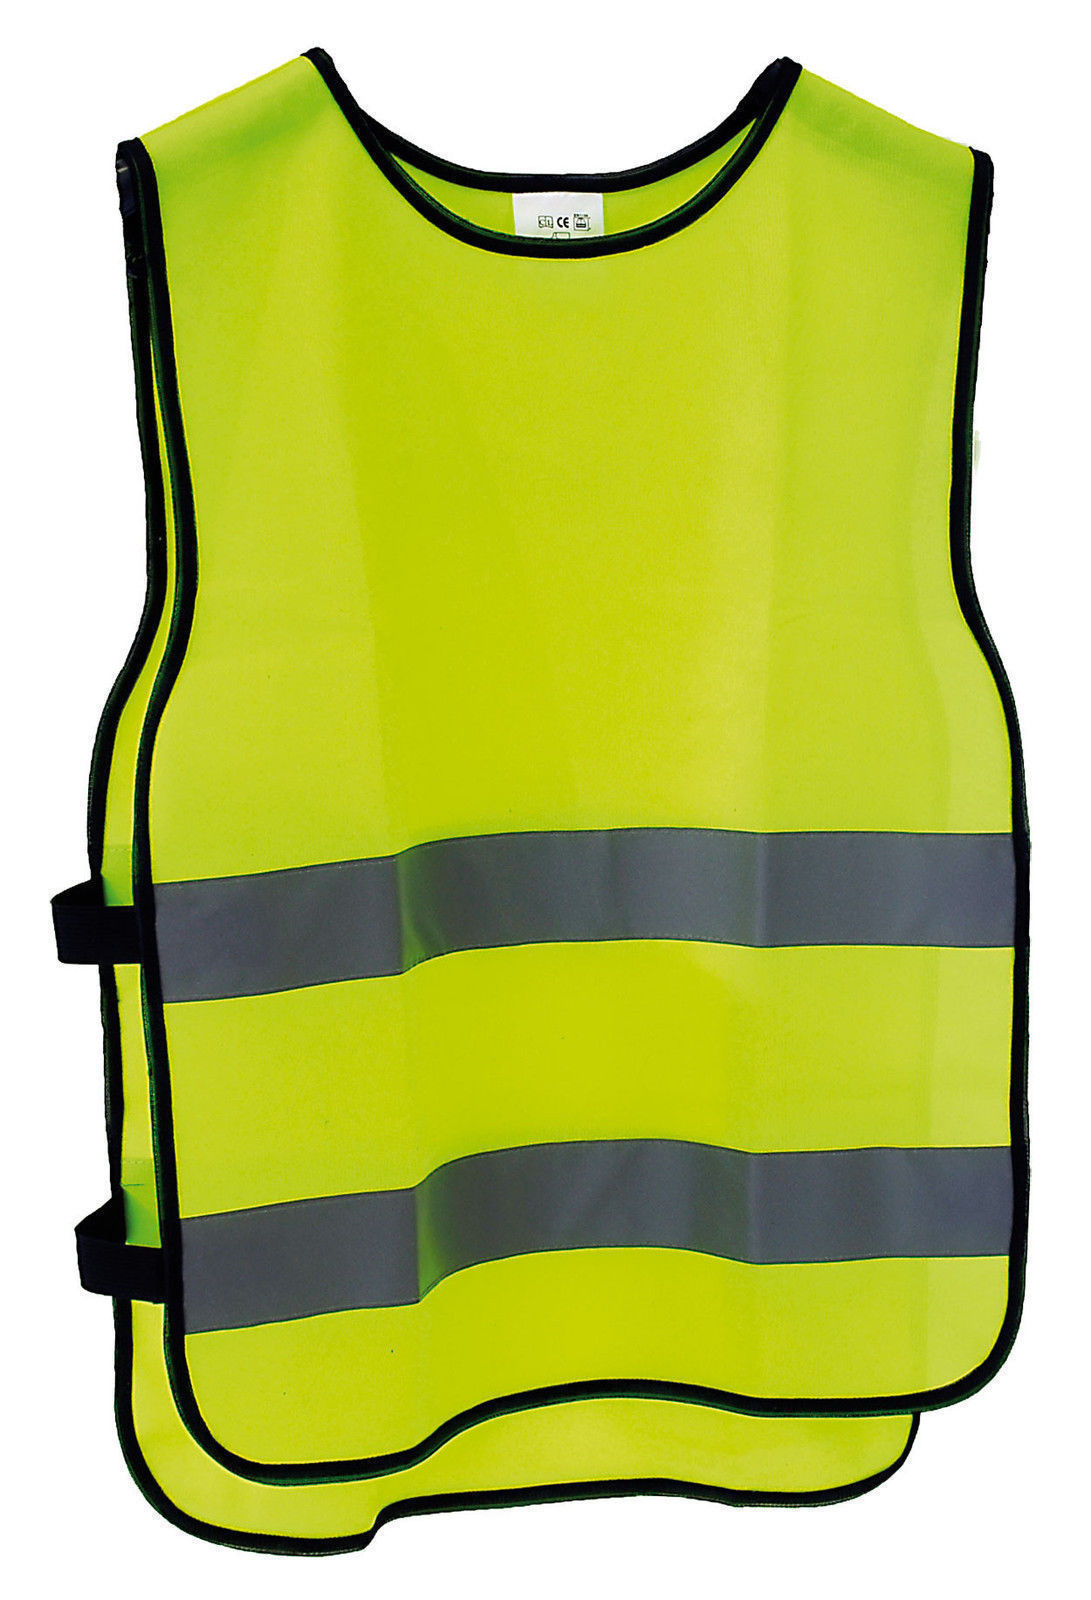  M-Wave Reflective Safety Vest Universal Adult Size   M-Wave Reflective Safety Vest Universal Adult Size 